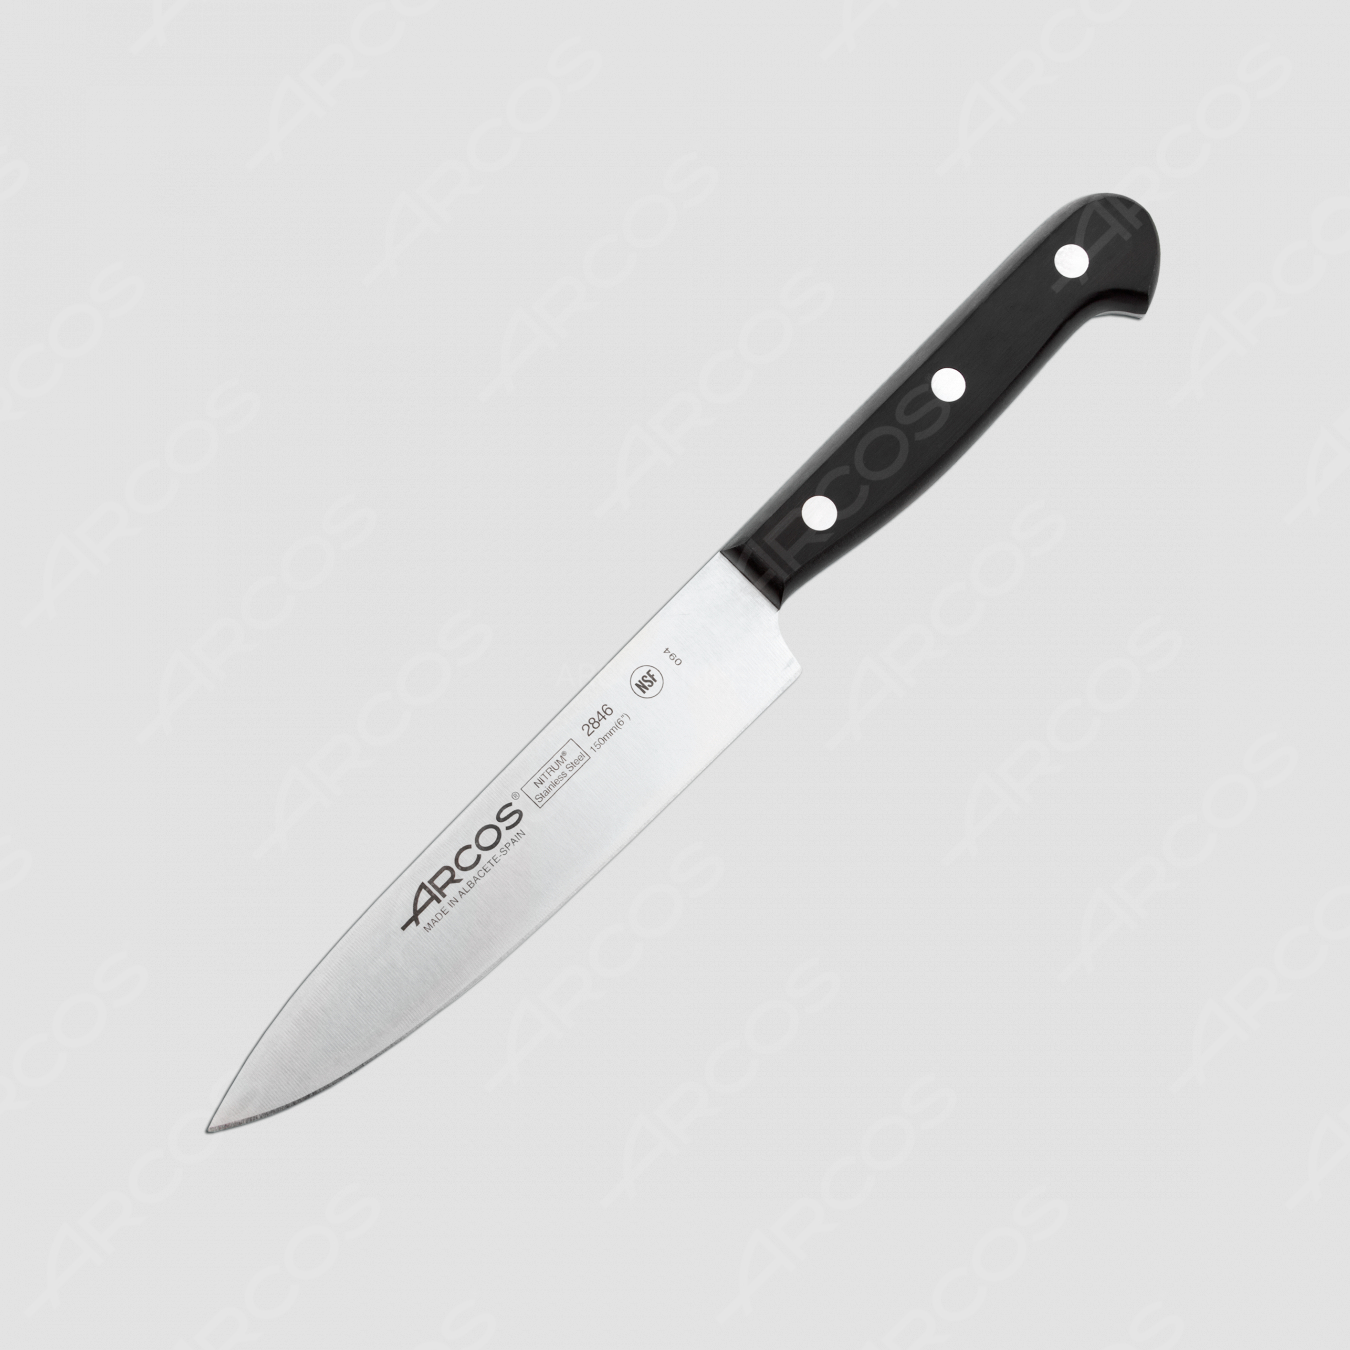 Профессиональный поварской кухонный нож 15 см, серия Universal, ARCOS, Испания